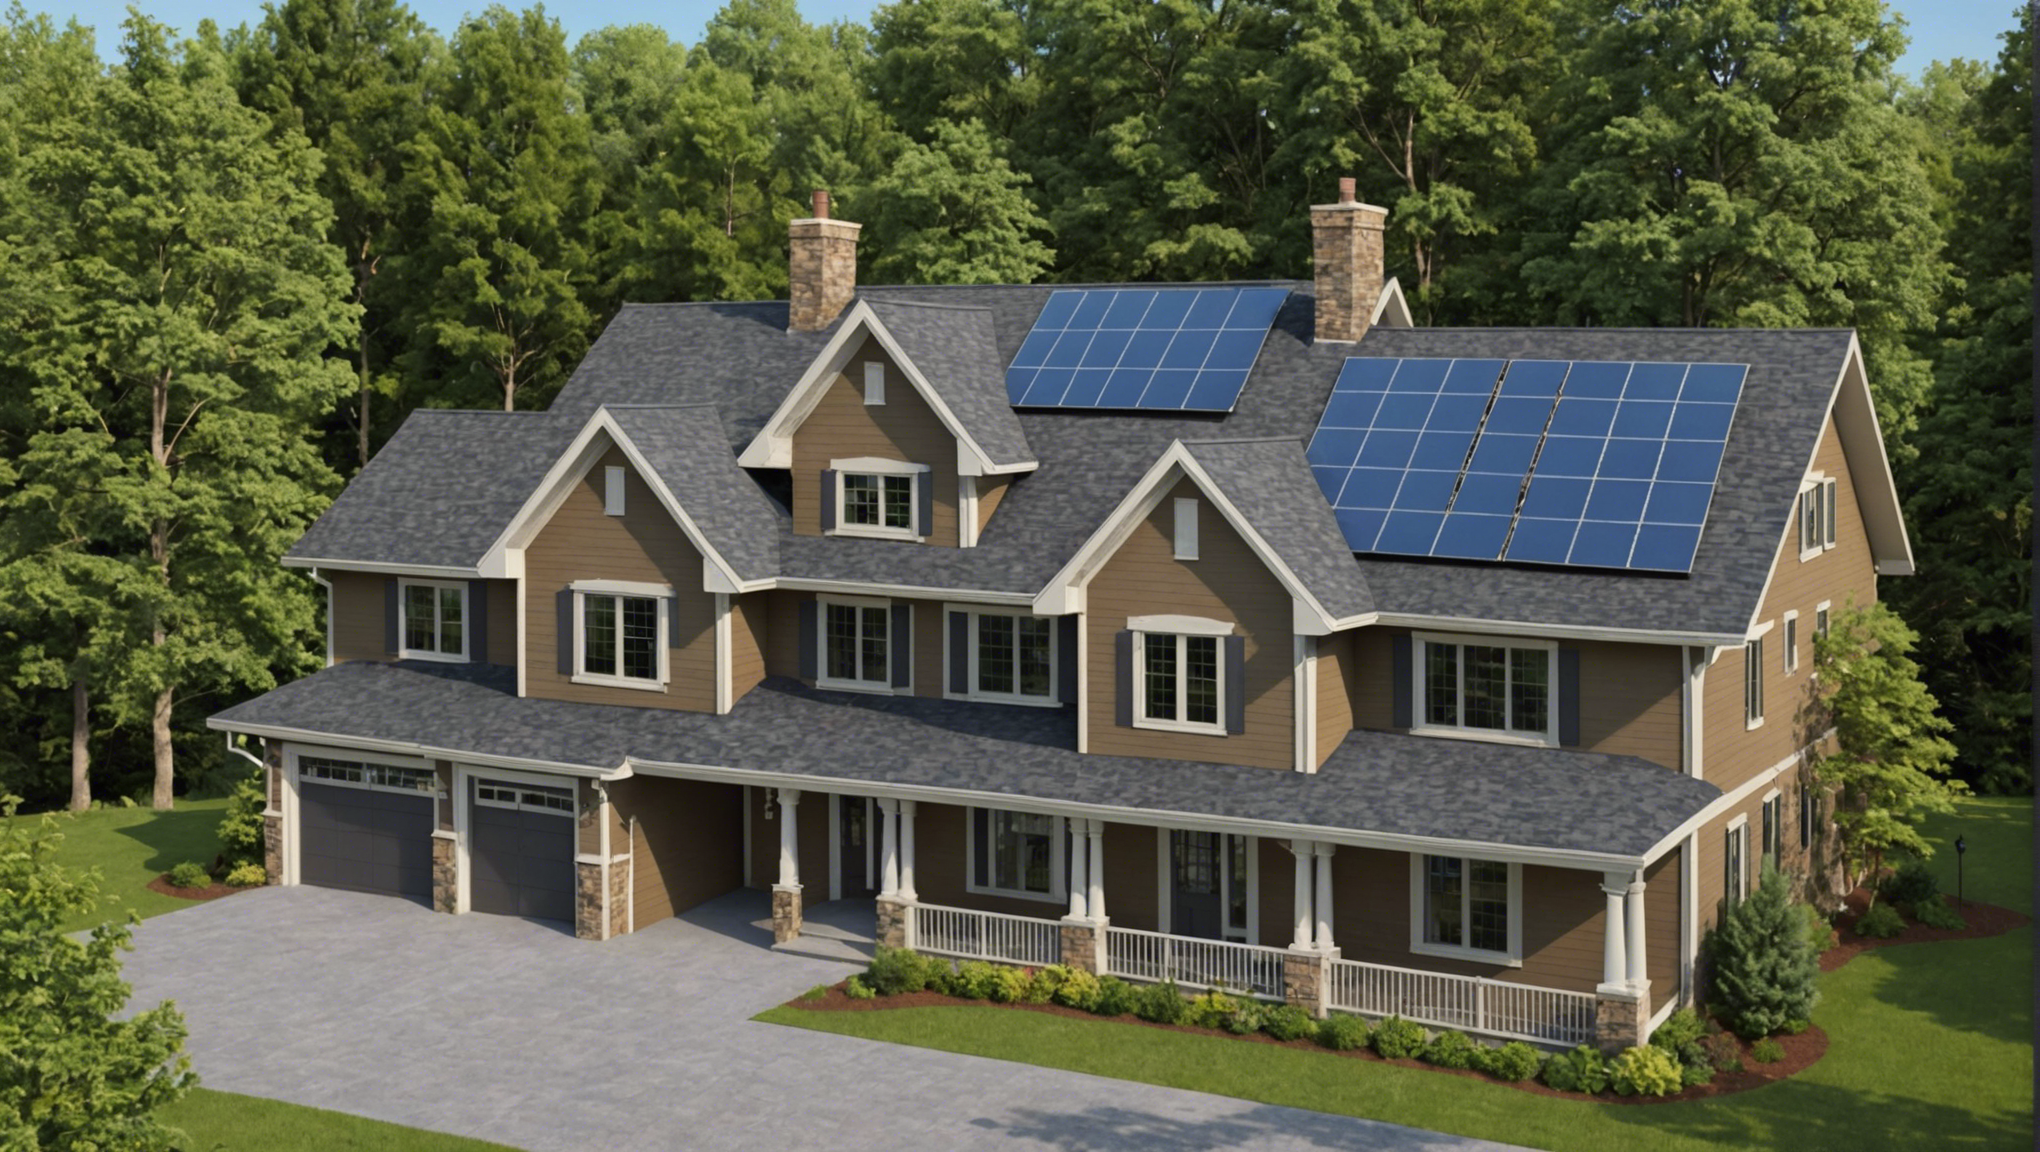 découvrez des conseils pratiques pour optimiser l'isolation de votre toiture et améliorer l'efficacité énergétique de votre habitation.